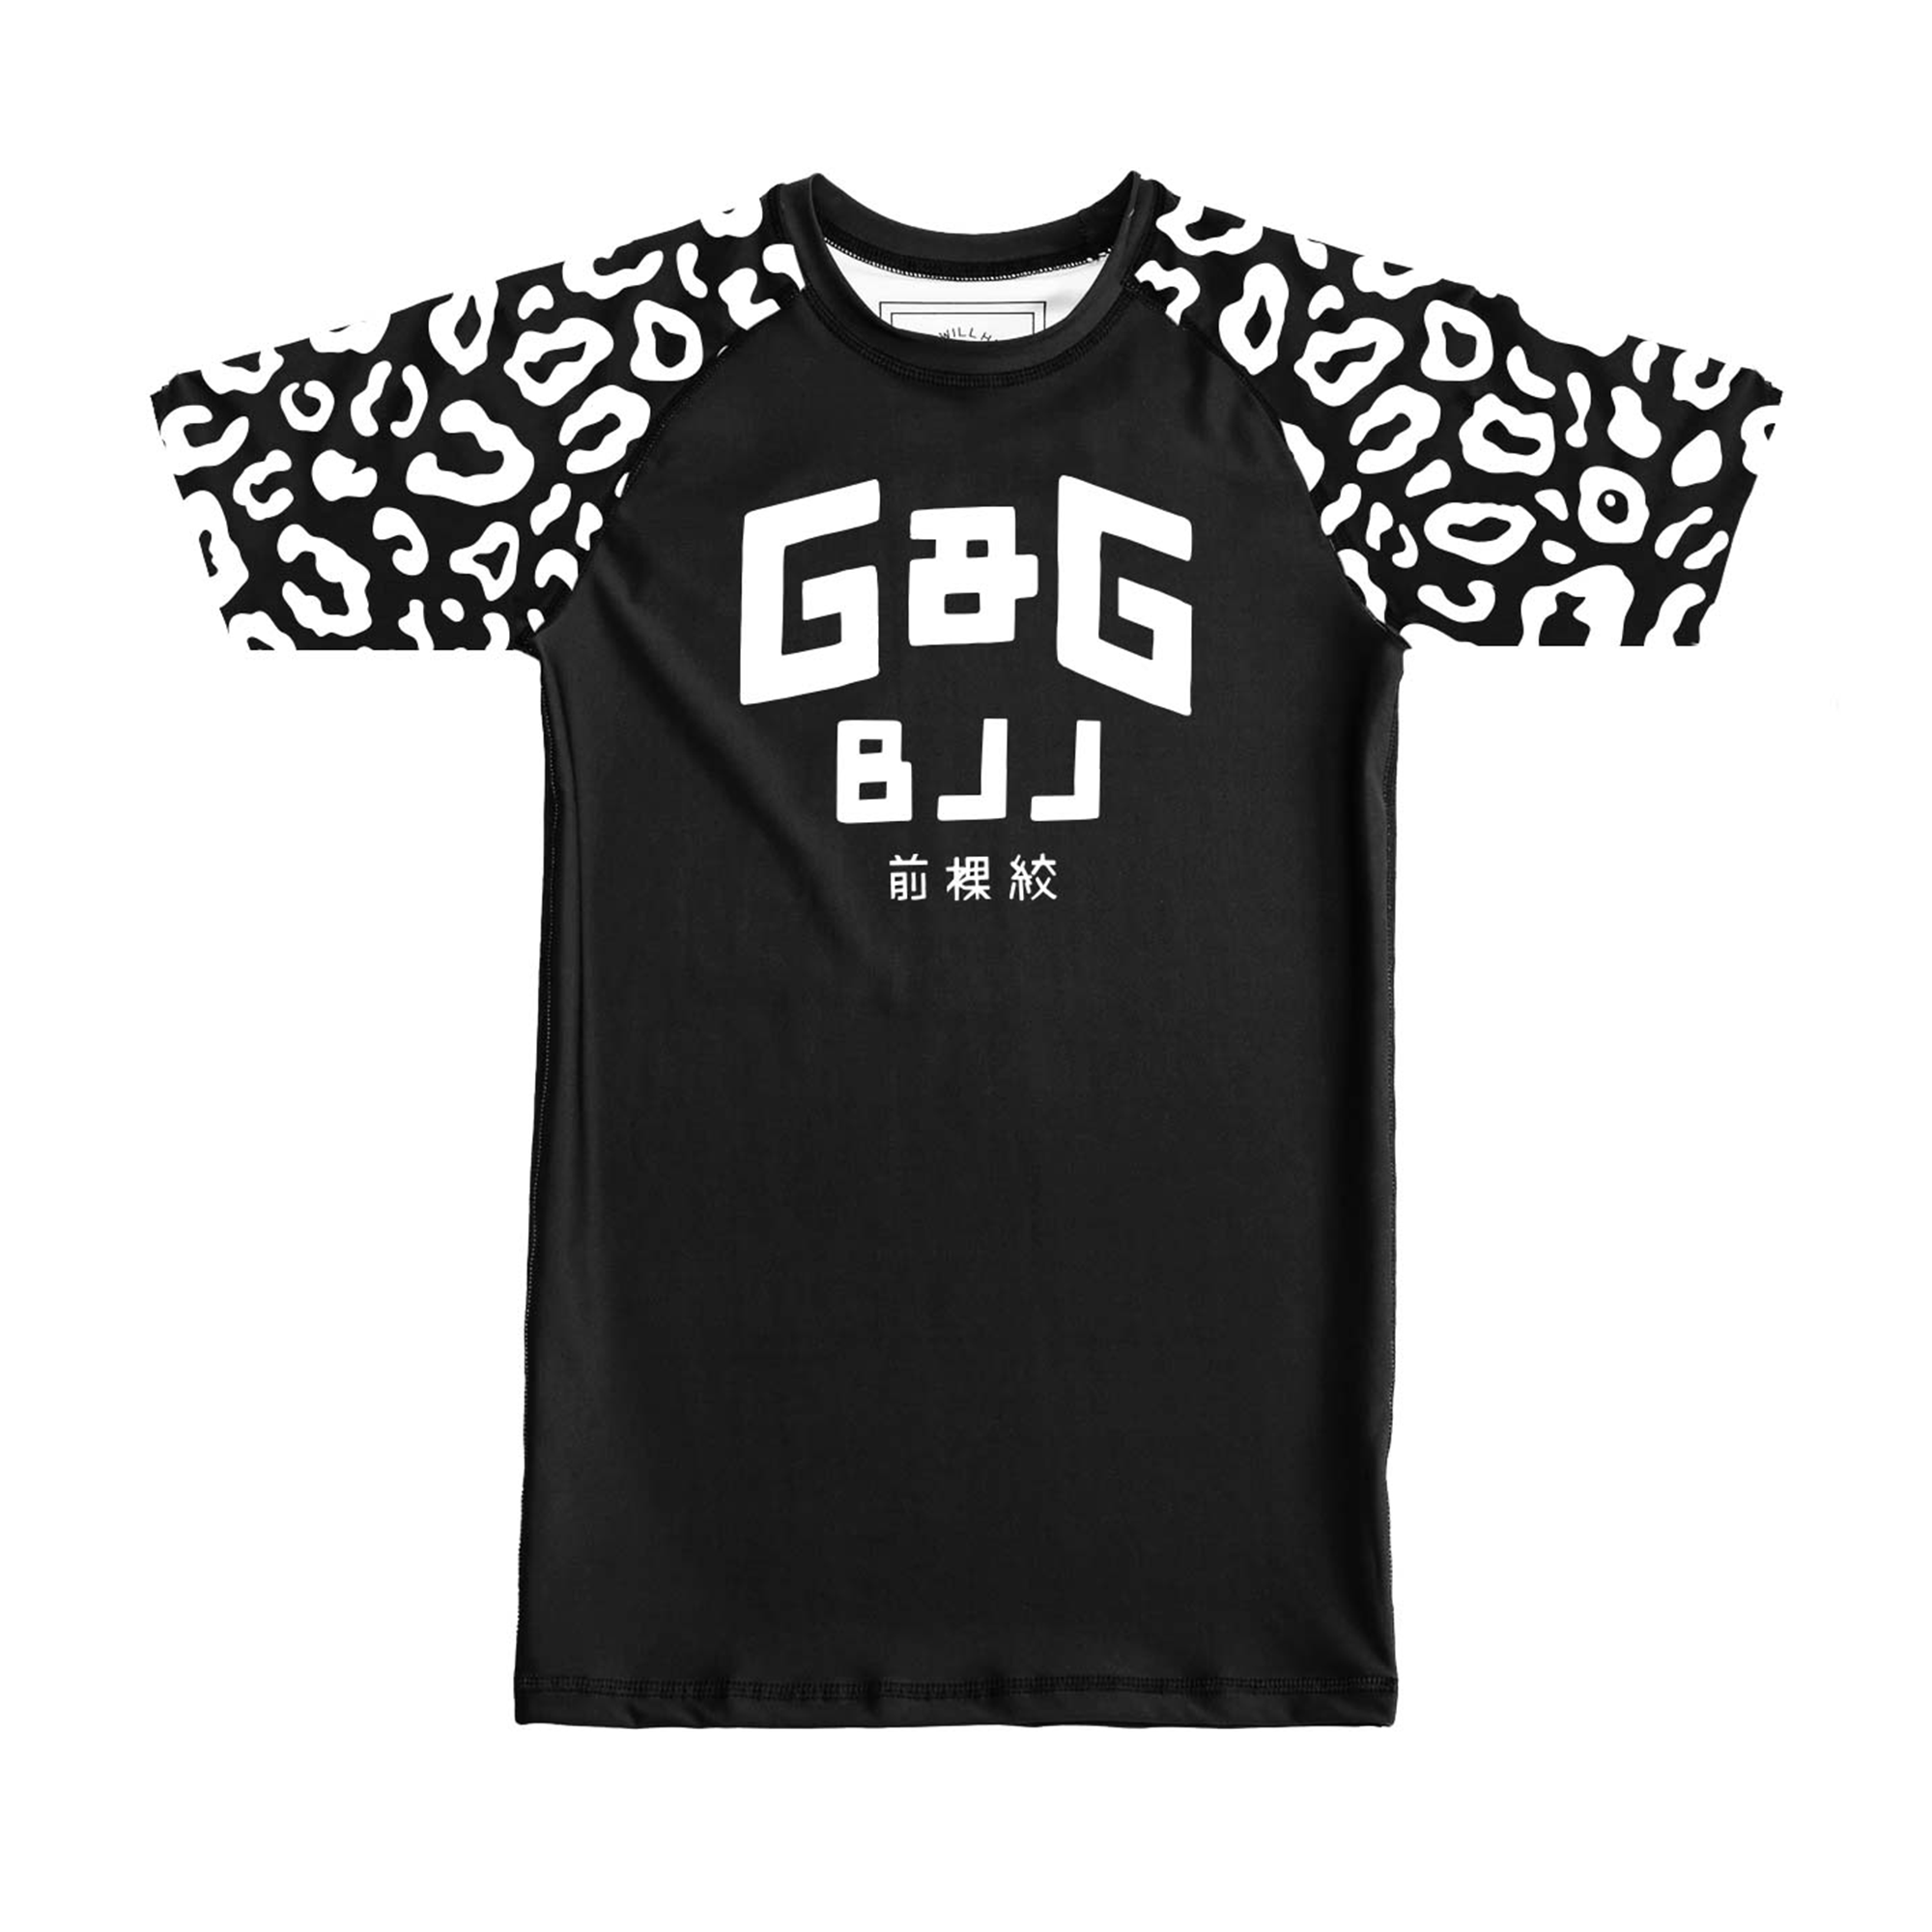 G&G Cheetah Rash Guard